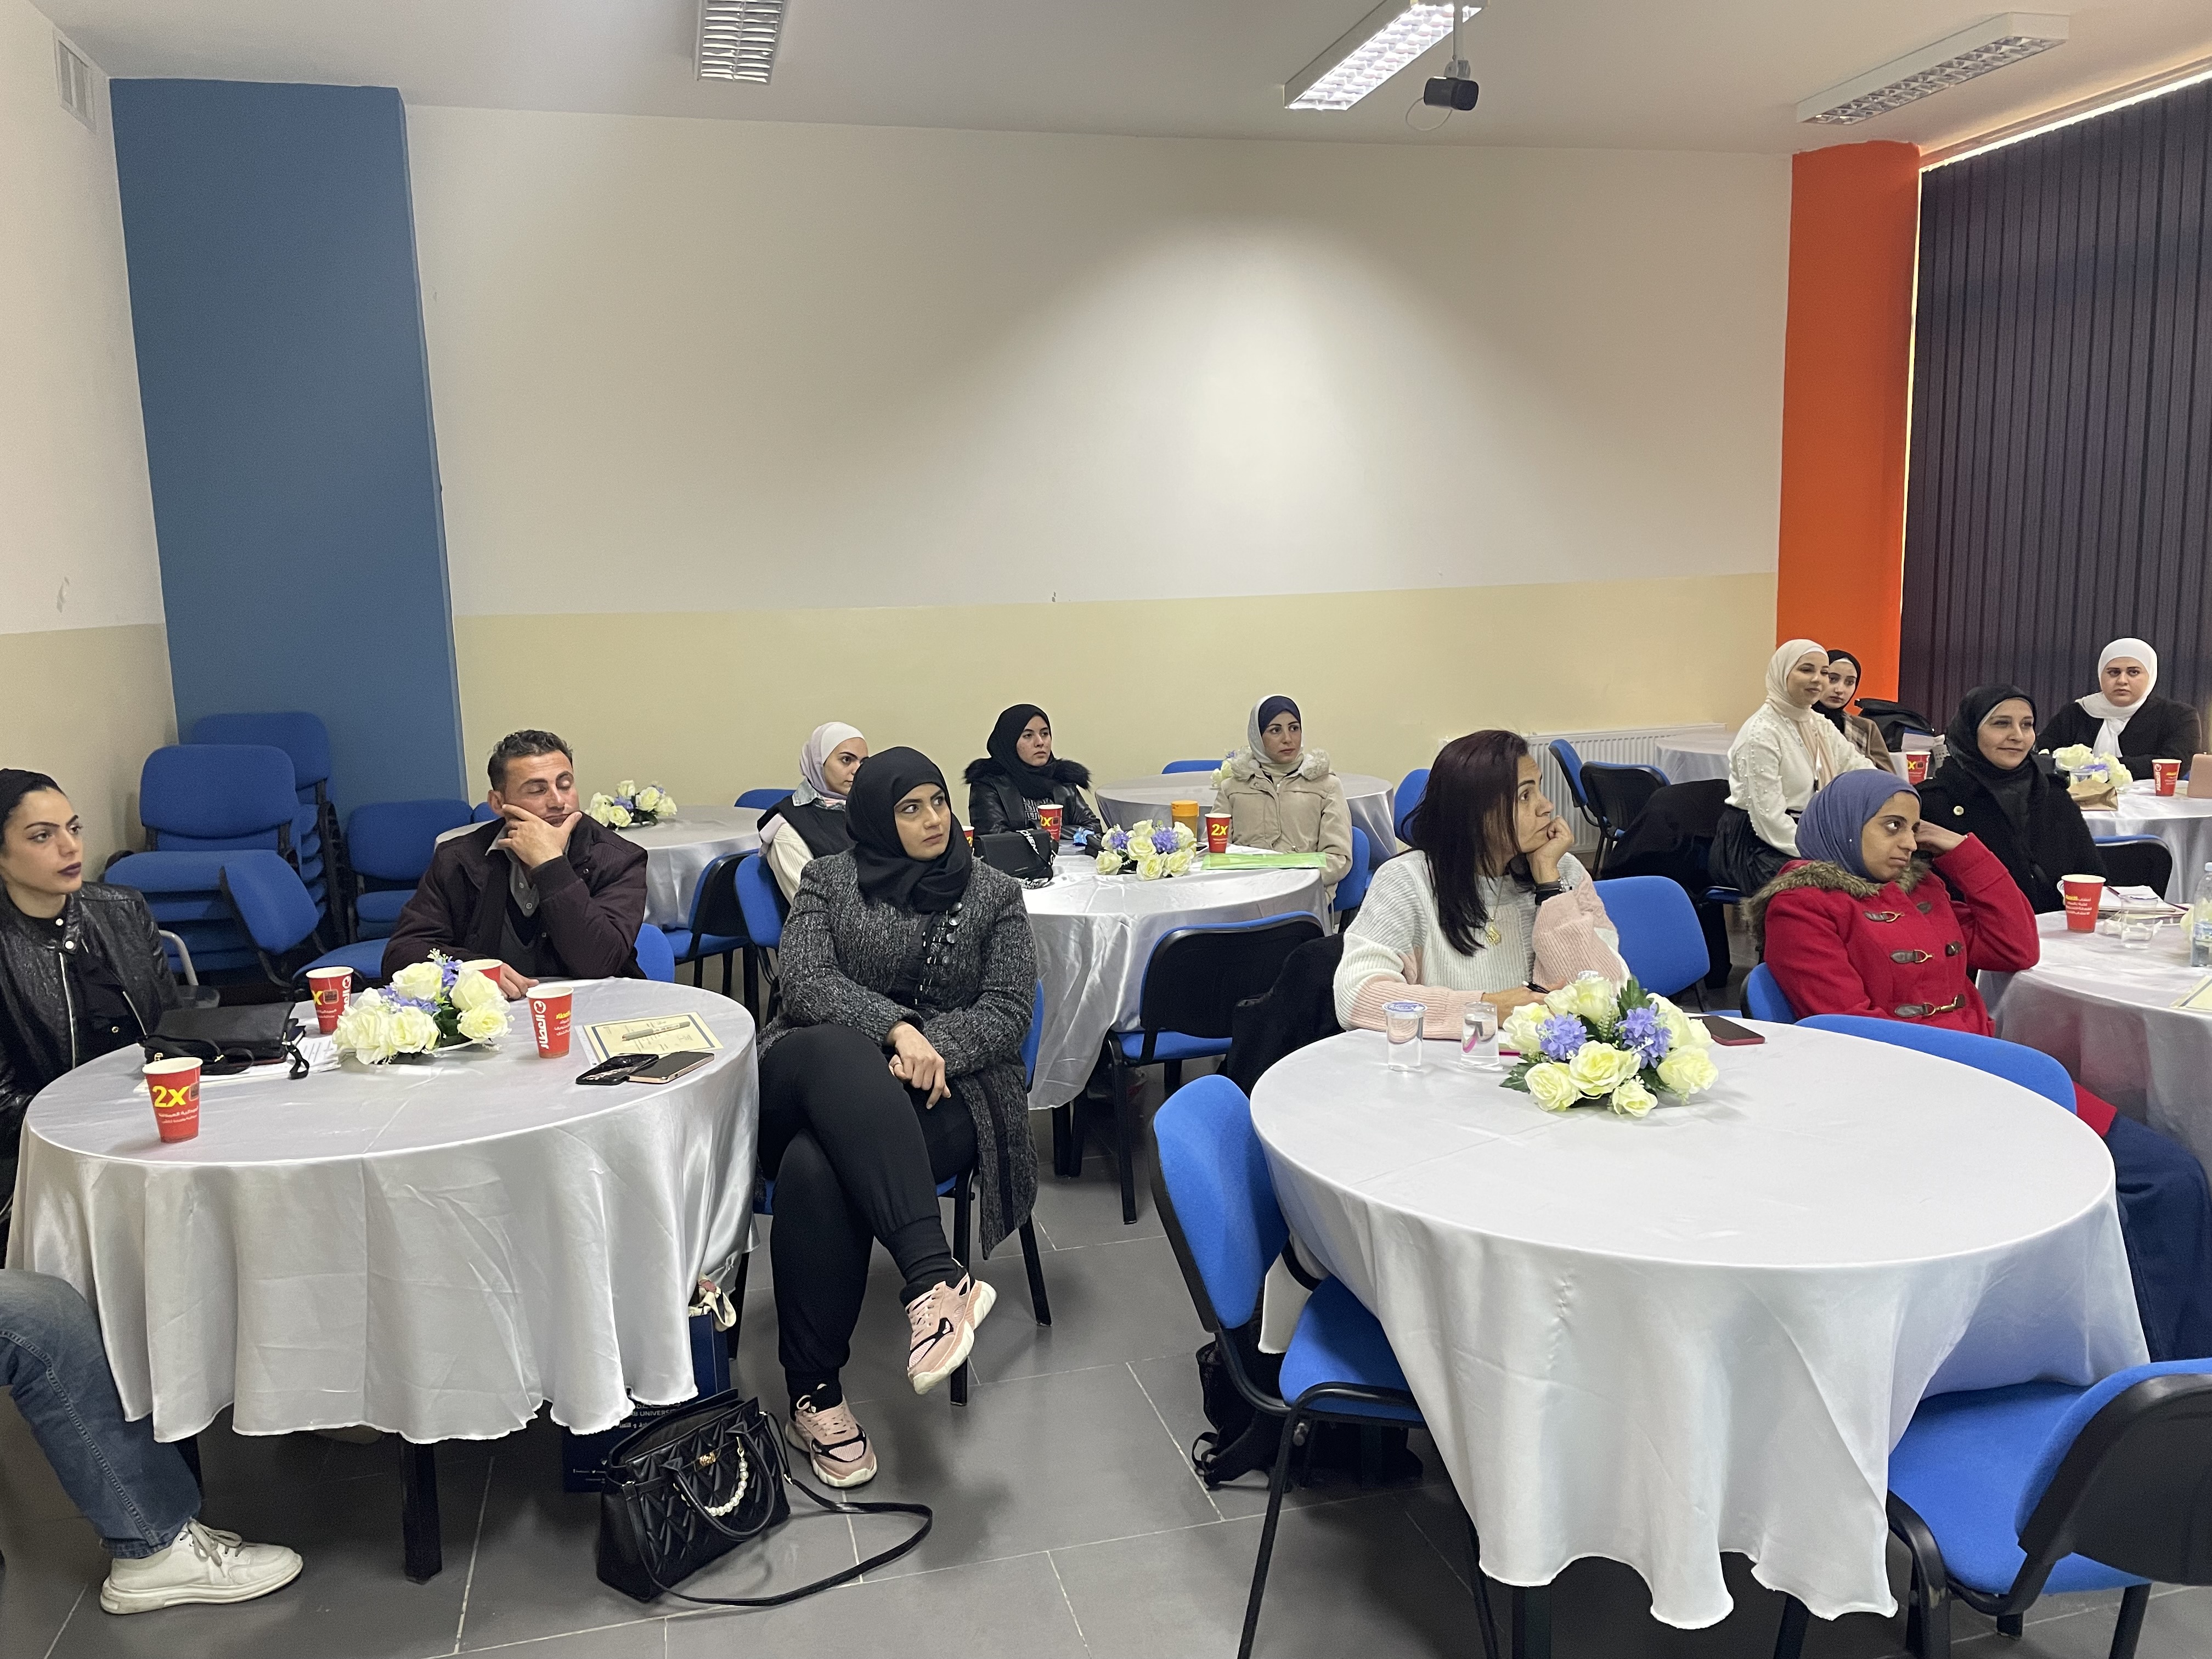 دورات وورشات تدريبية لمكتب الإرشاد الوظيفي ومتابعة الخريجين في "عمان العربية"7